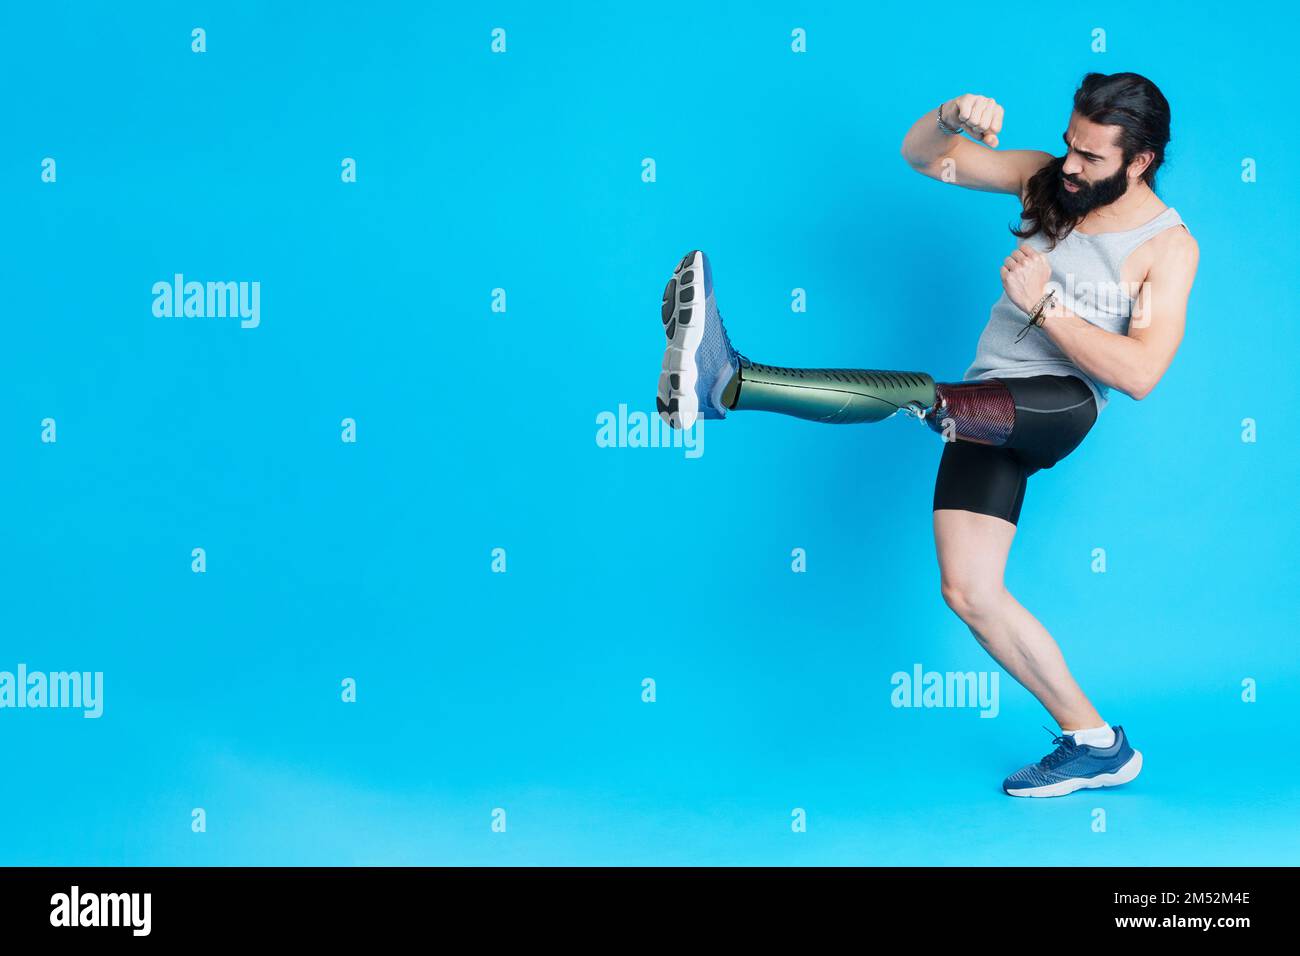 Ein Mann mit einer Prothese am Bein tritt und kämpft Stockfoto